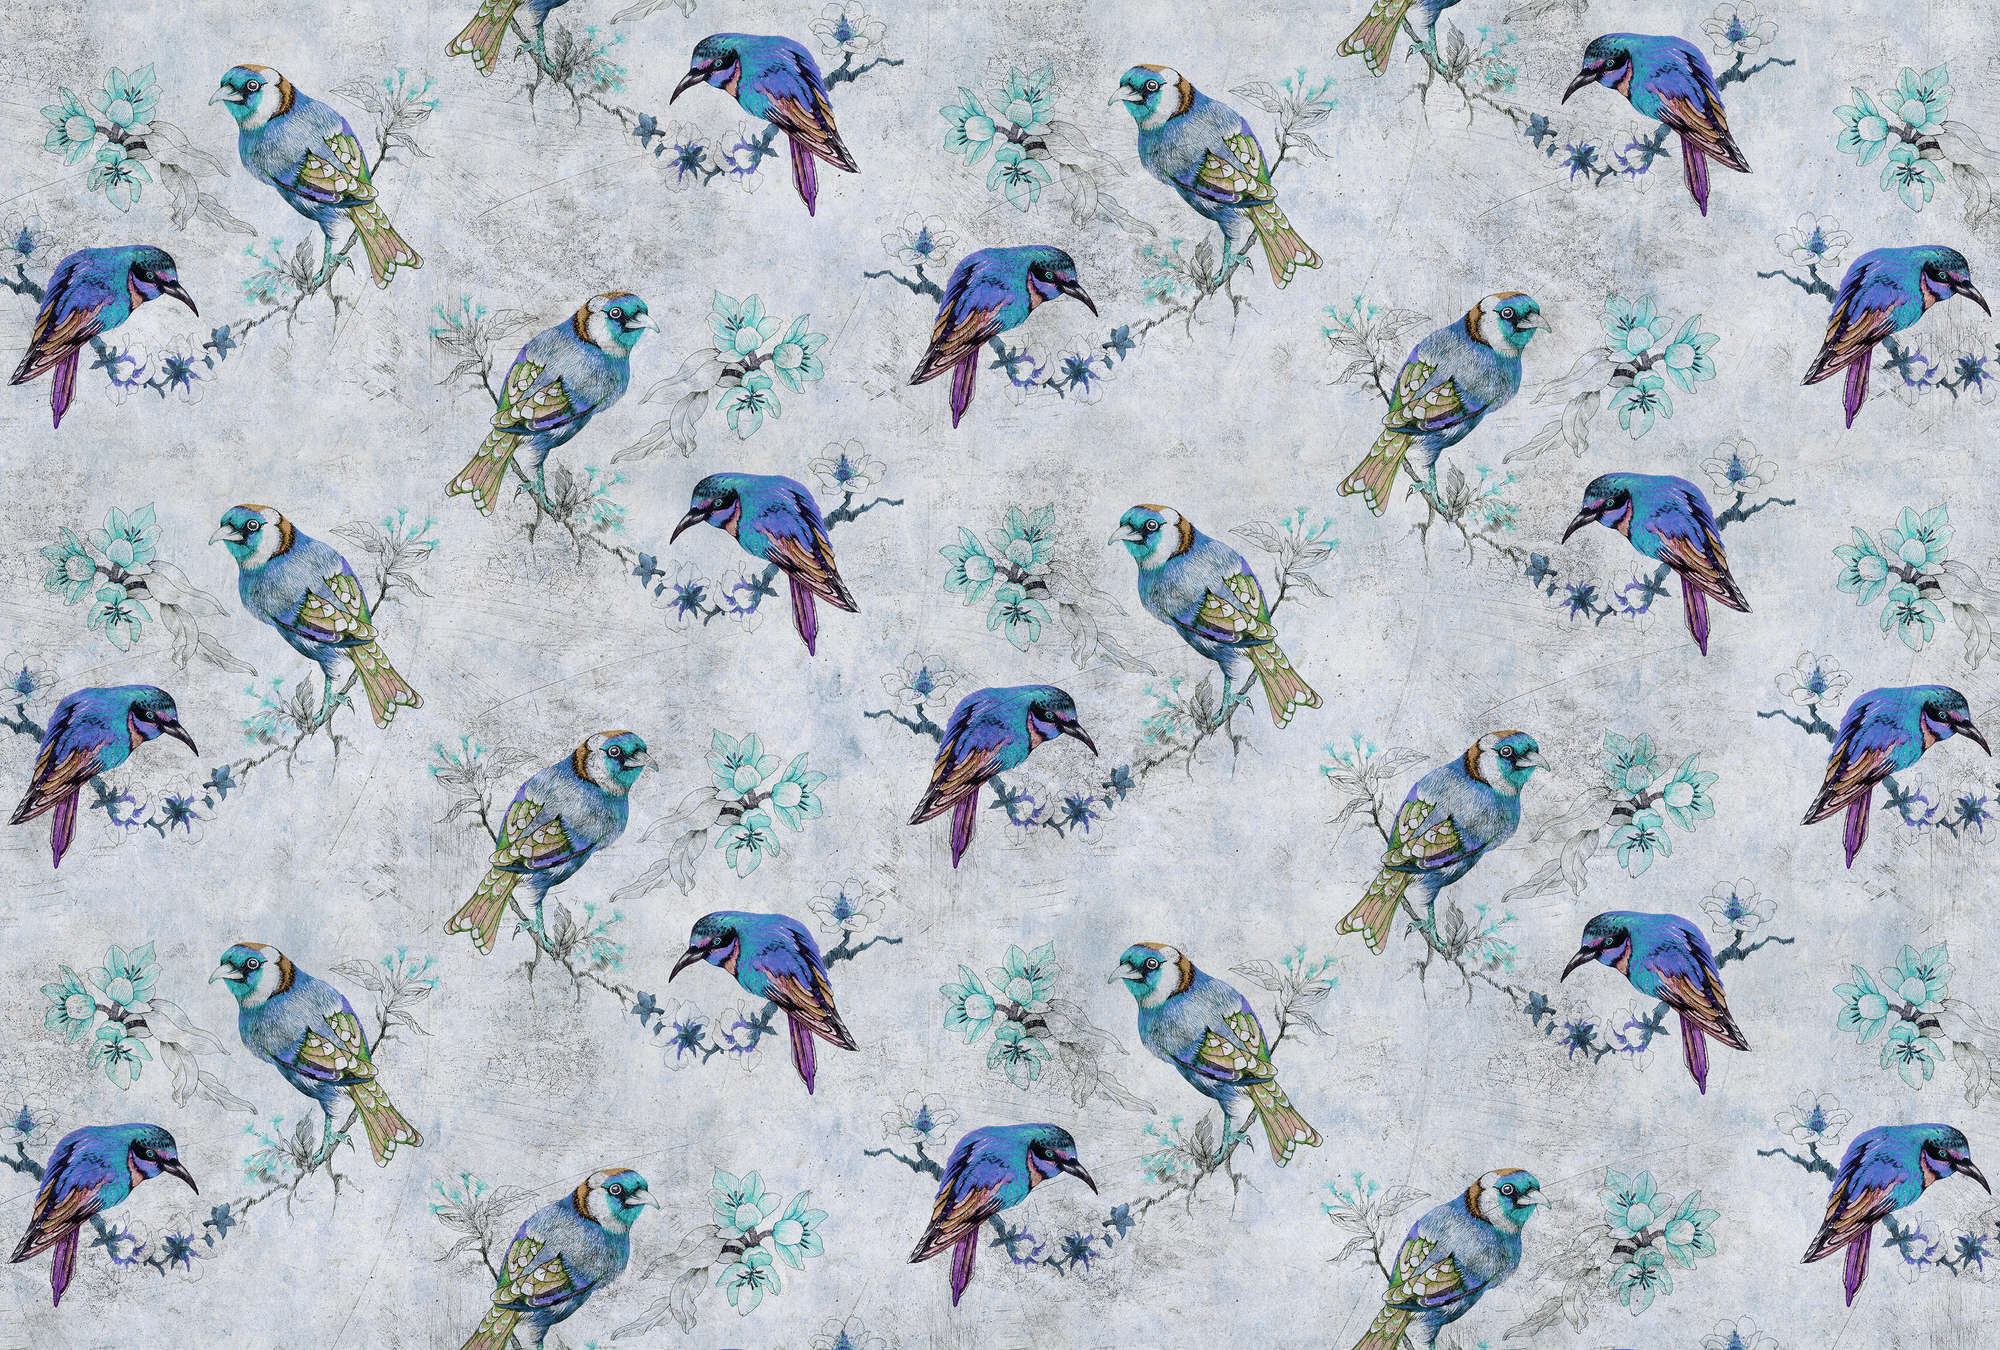             Love birds 1 - Digital behang vogelpatroon in tekenstijl in krasstructuur - Blauw, Grijs | Strukturenvlies
        